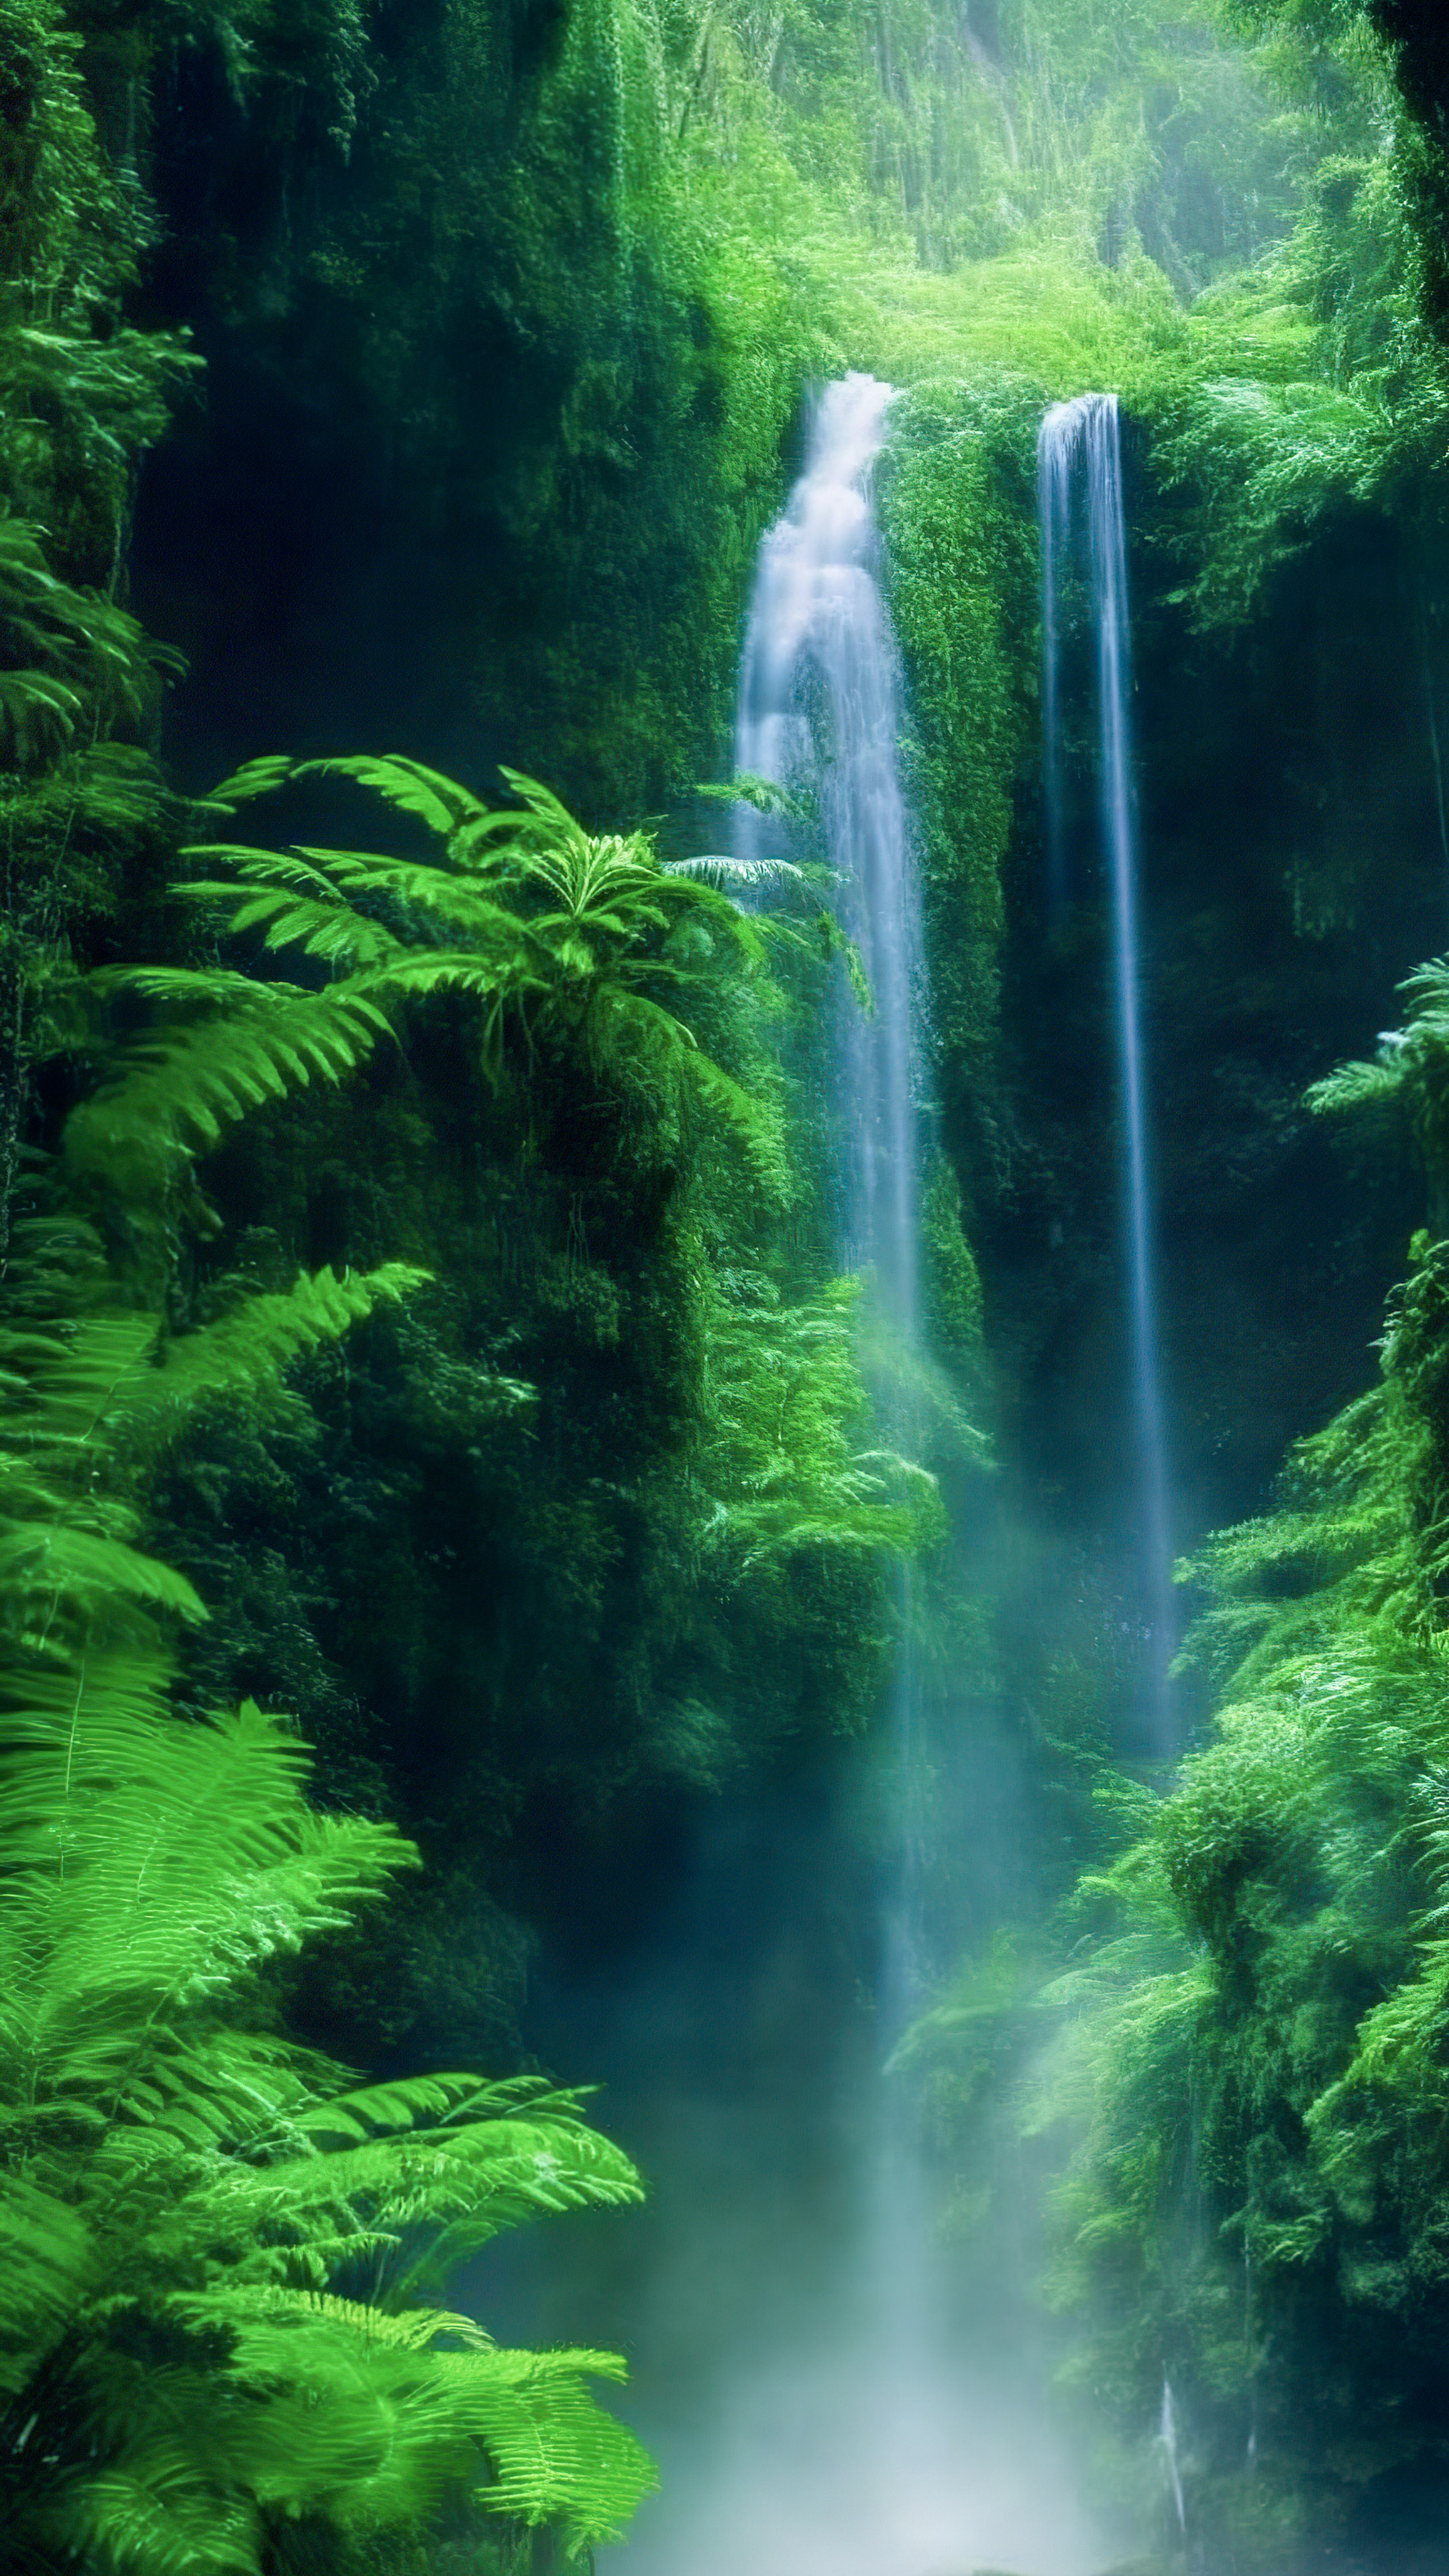 Perdez-vous dans la magie de notre fond d'écran de belle cascade, révélant une cascade enchanteresse cachée au plus profond de la forêt tropicale verdoyante.